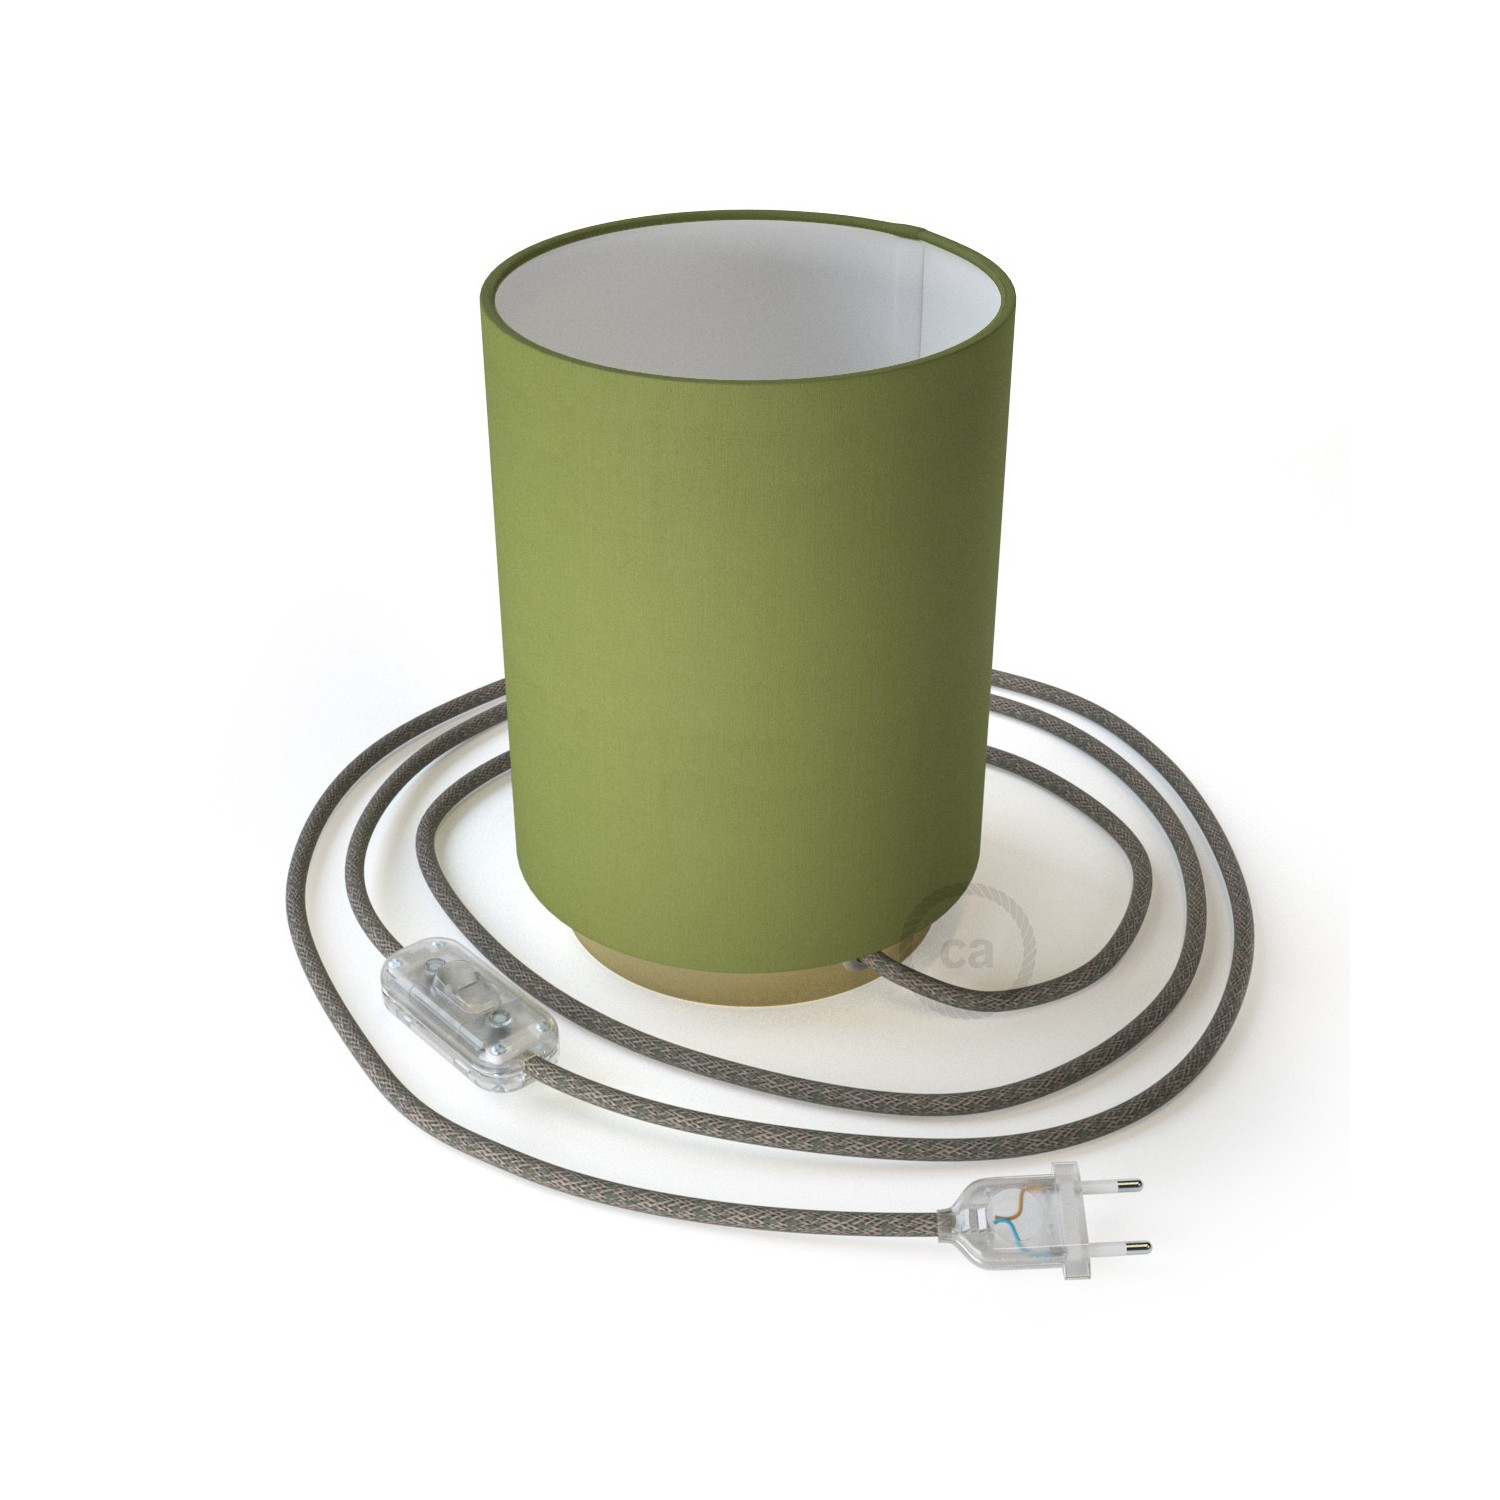 Posaluce i metall med Cilindro Olivgrön Canvas lampskärm, komplett med textilkabel, sladdströmbrytare och 2-polig stickpropp.